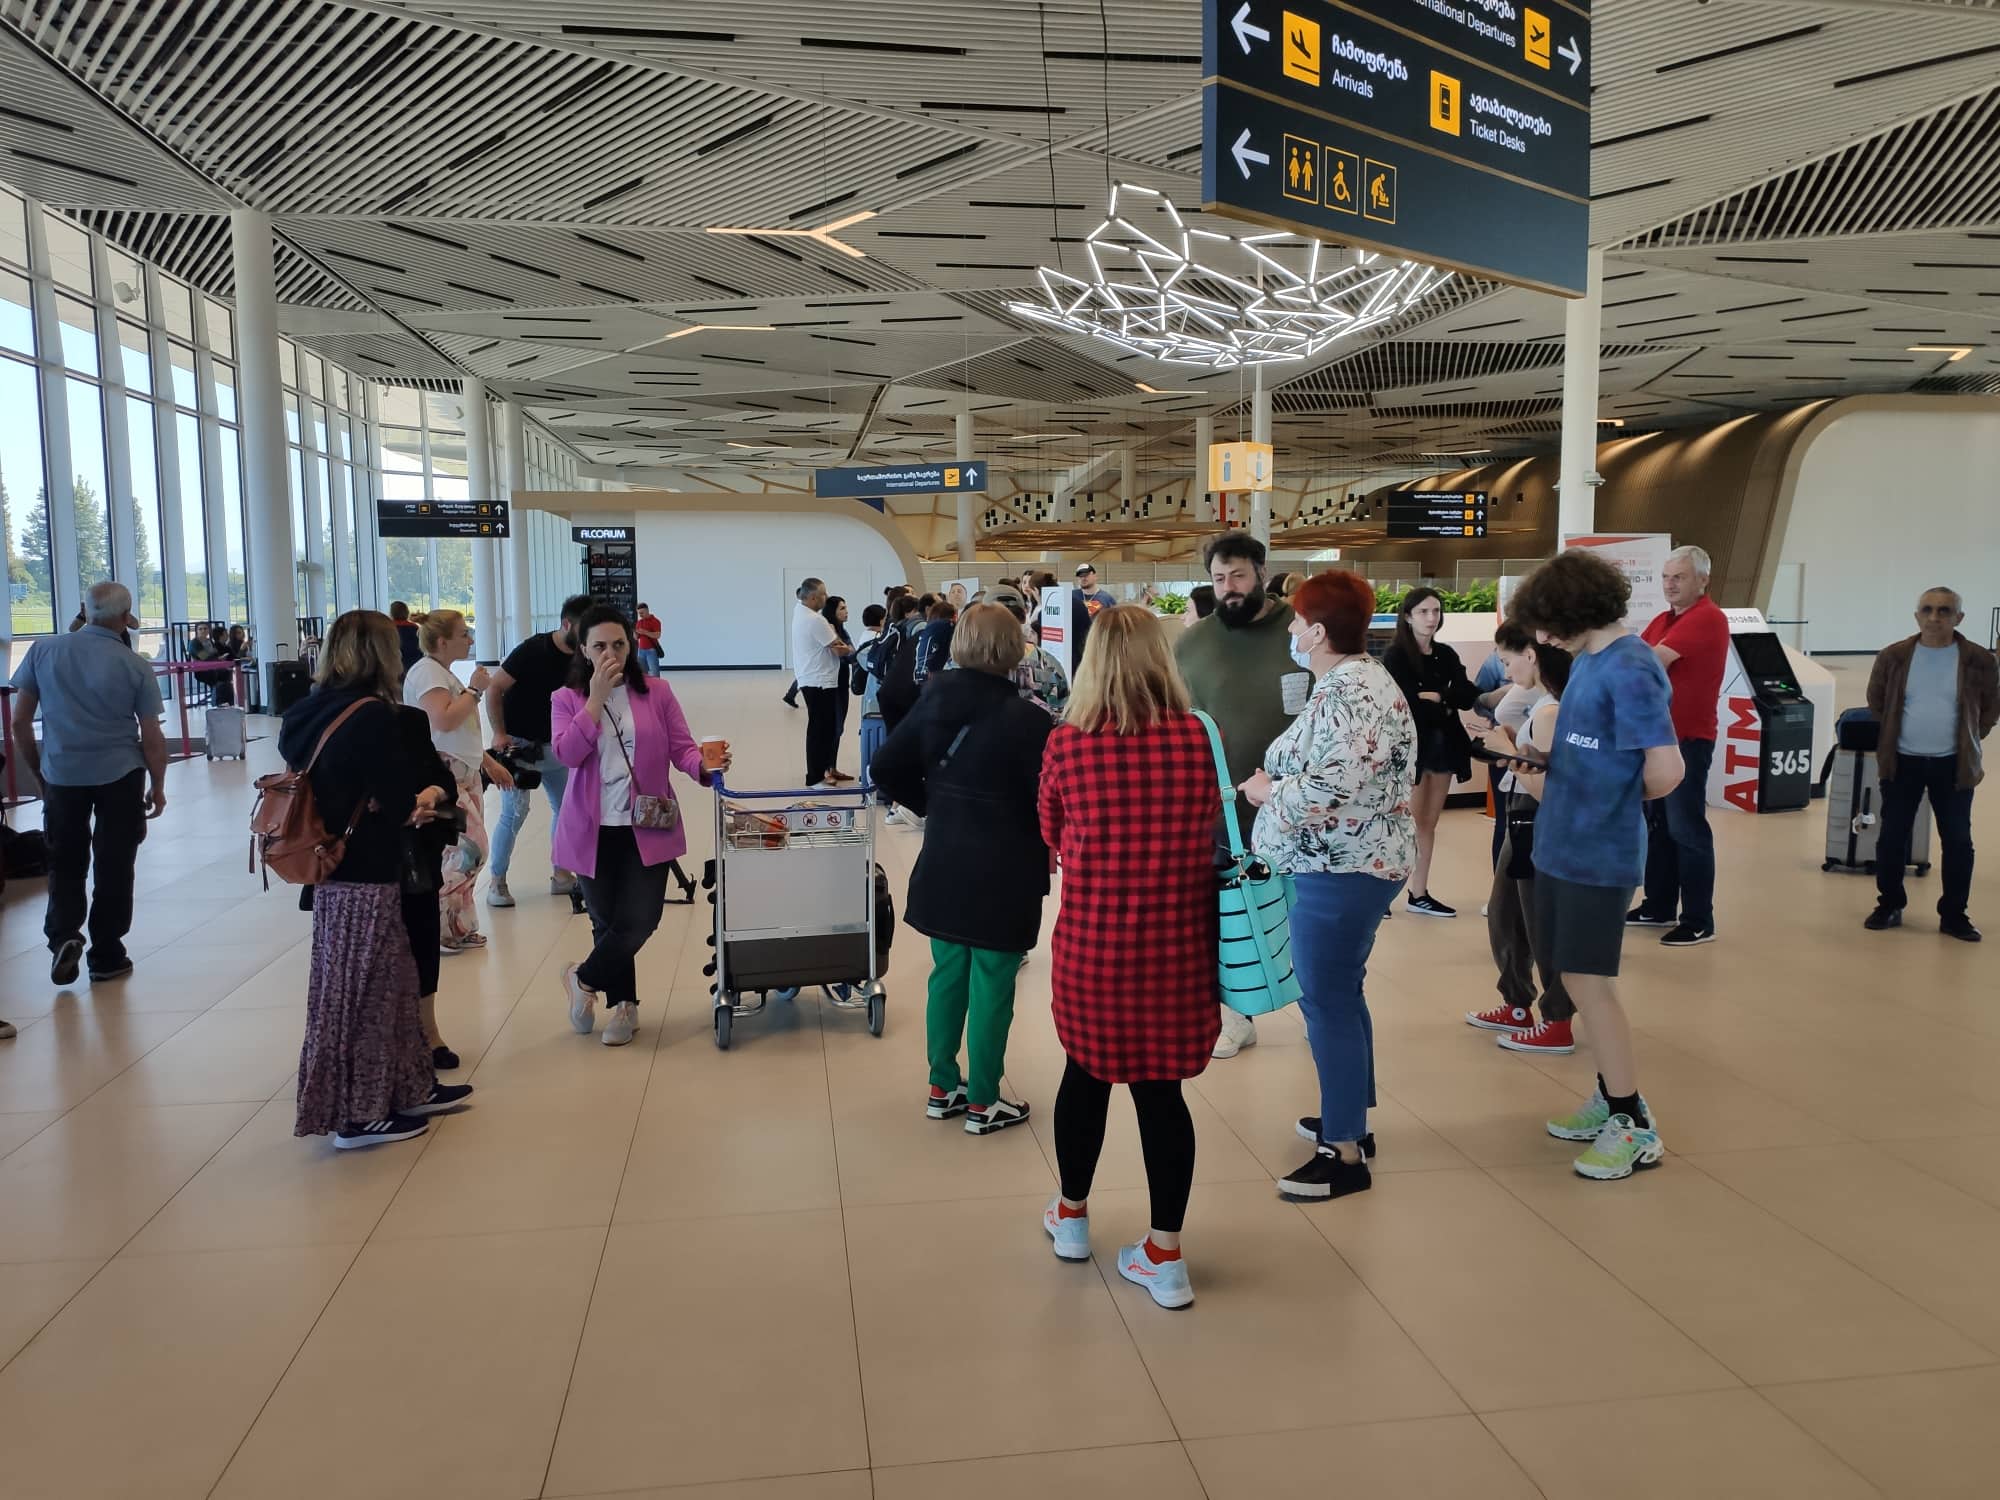 ქუთაისის აეროპორტში ხმაურია – მგზავრები ბარსელონას რეისის გაუქმებაზე პასუხს ითხოვენ